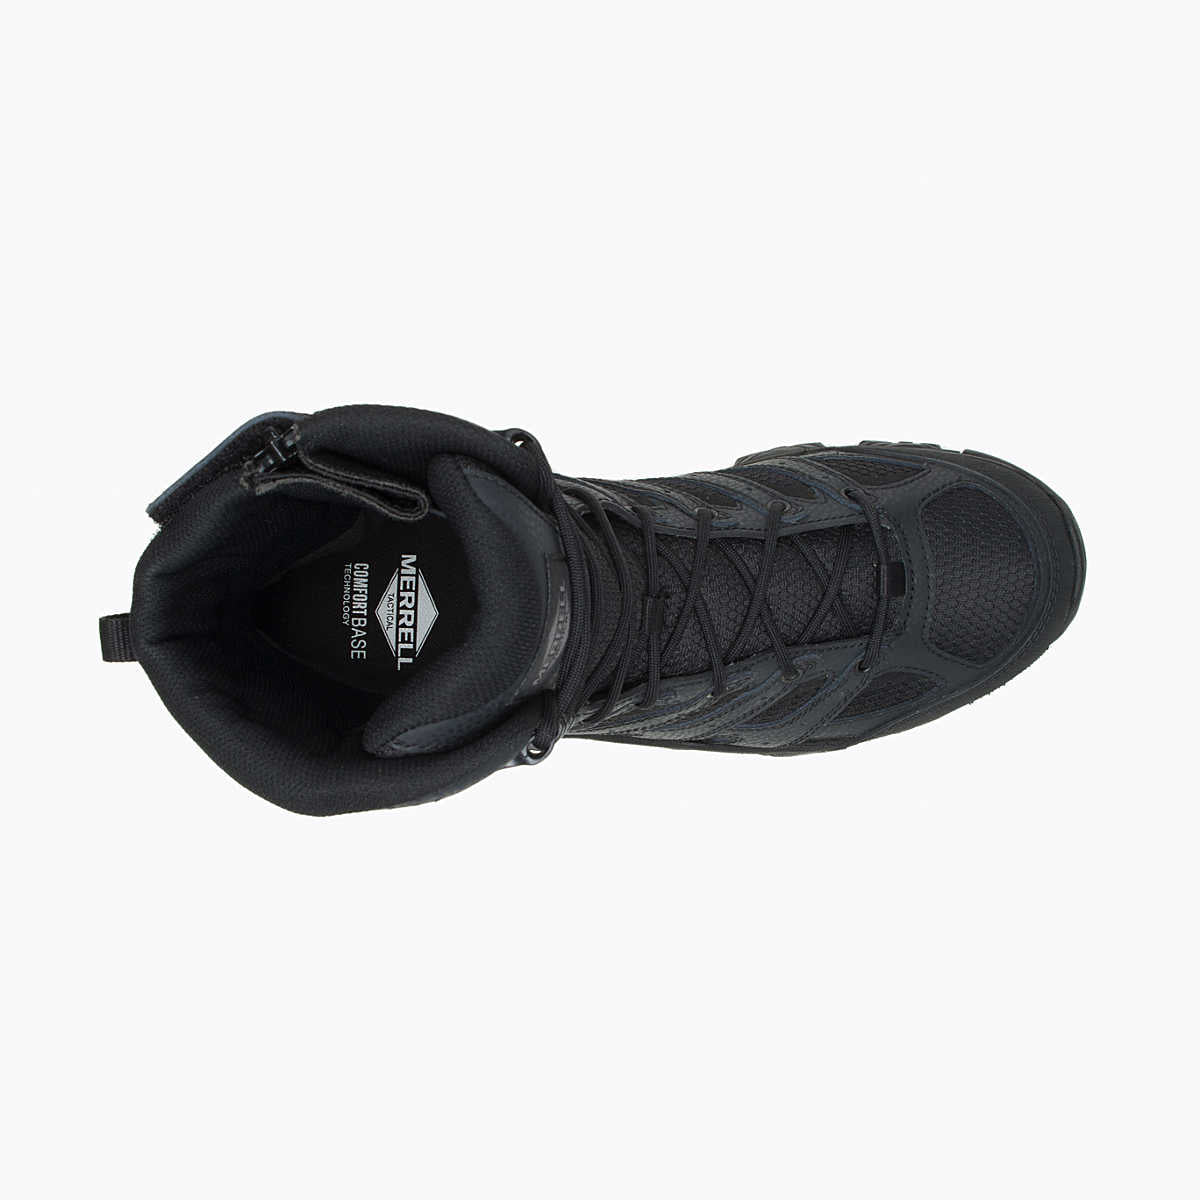 Men's Moab 3 8" Tactical Zip Waterproof Boot